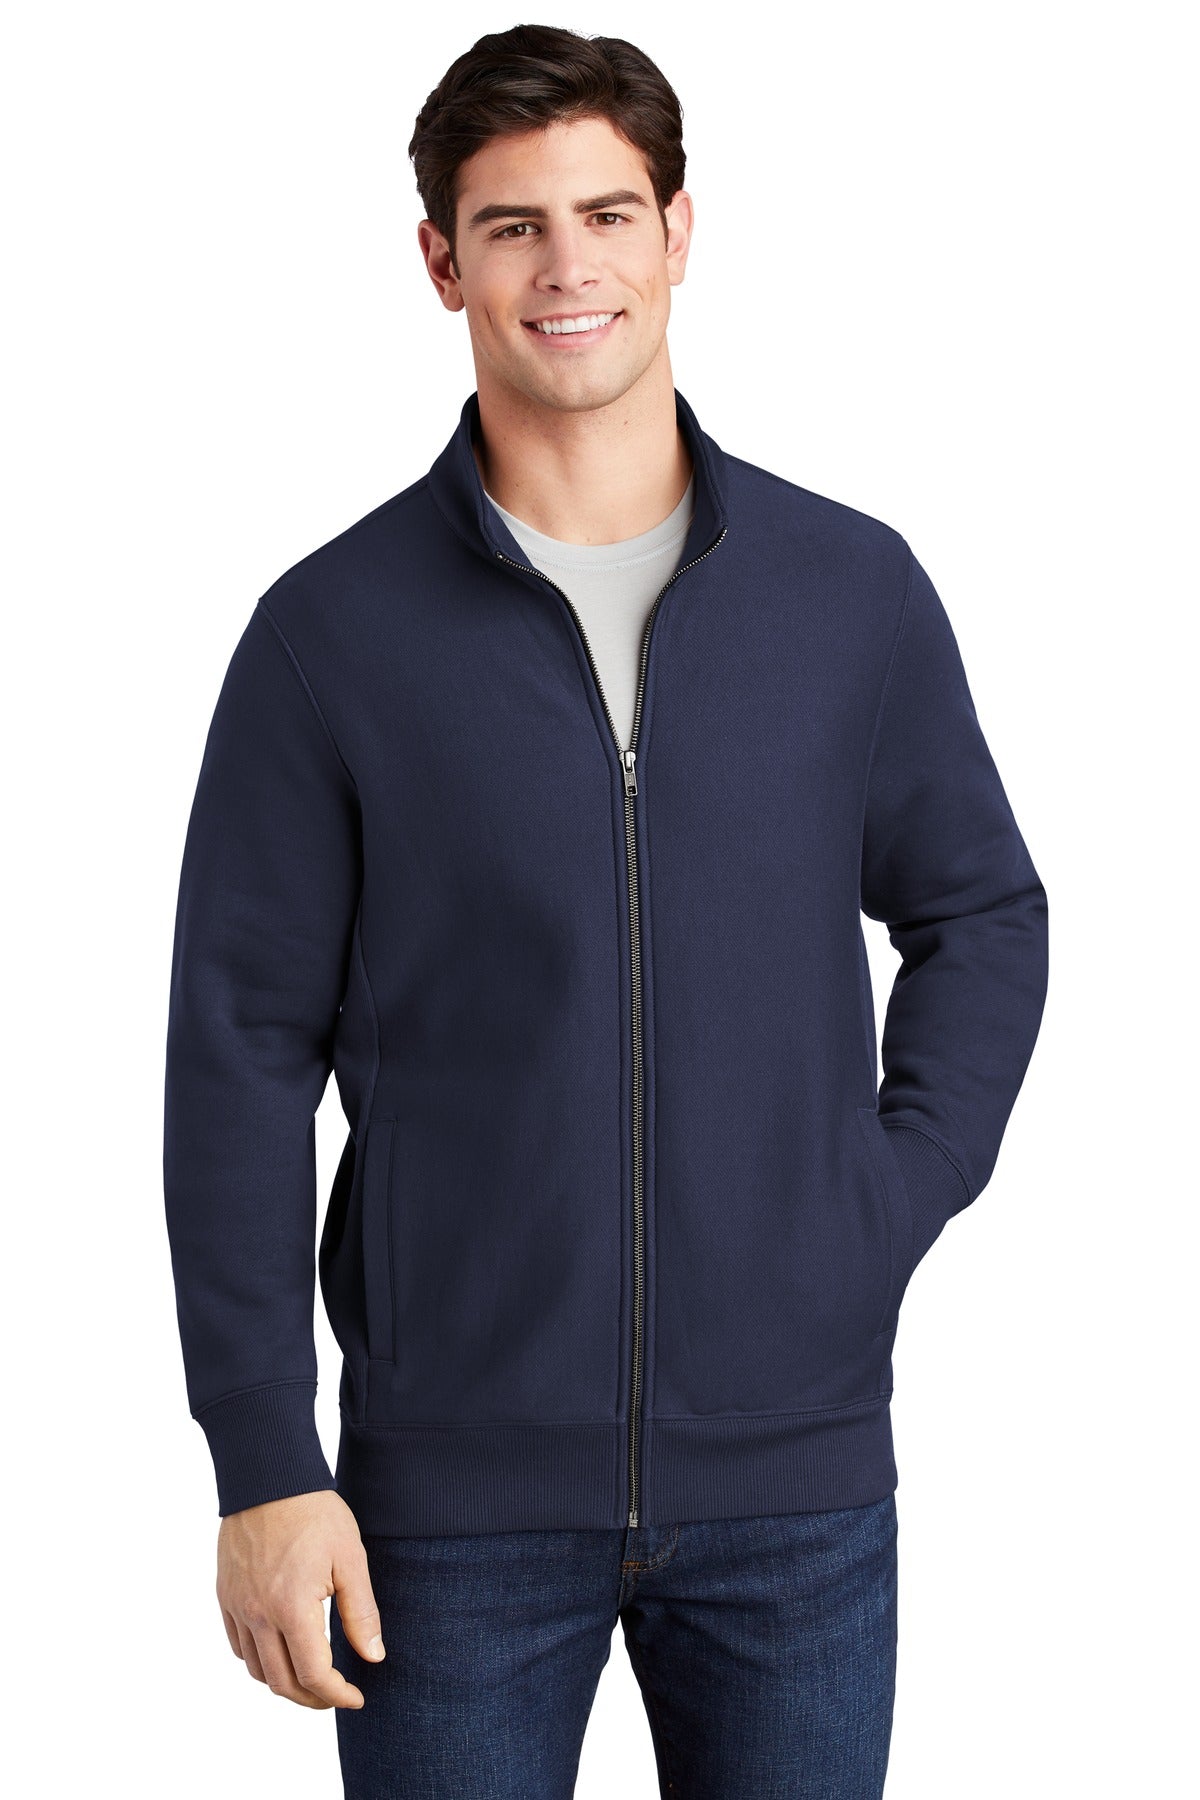 Sweatshirts/Fleece True Navy Sport-Tek